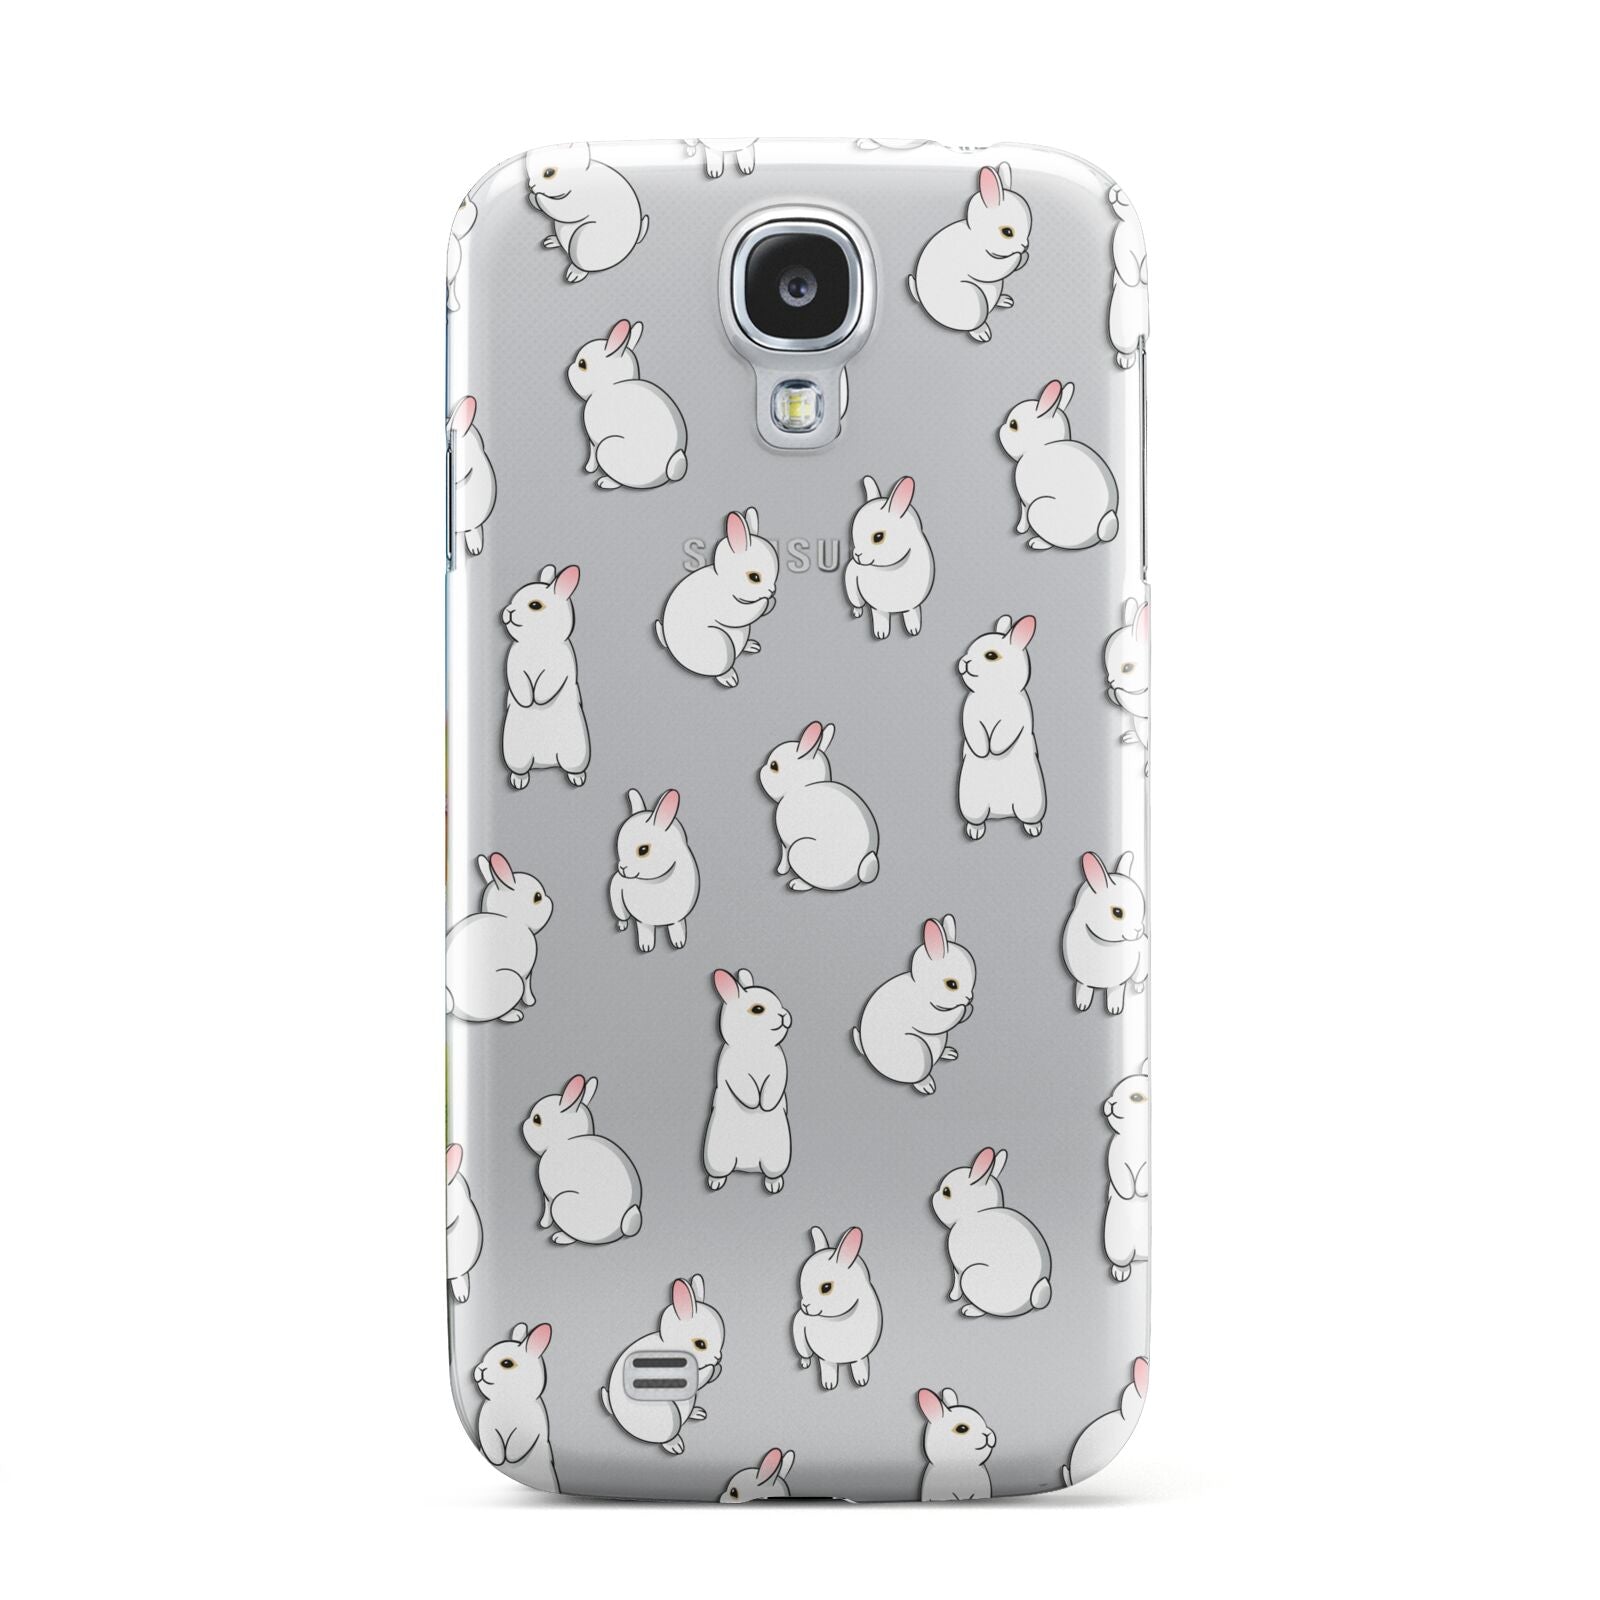 Bunny Rabbit Samsung Galaxy S4 Case